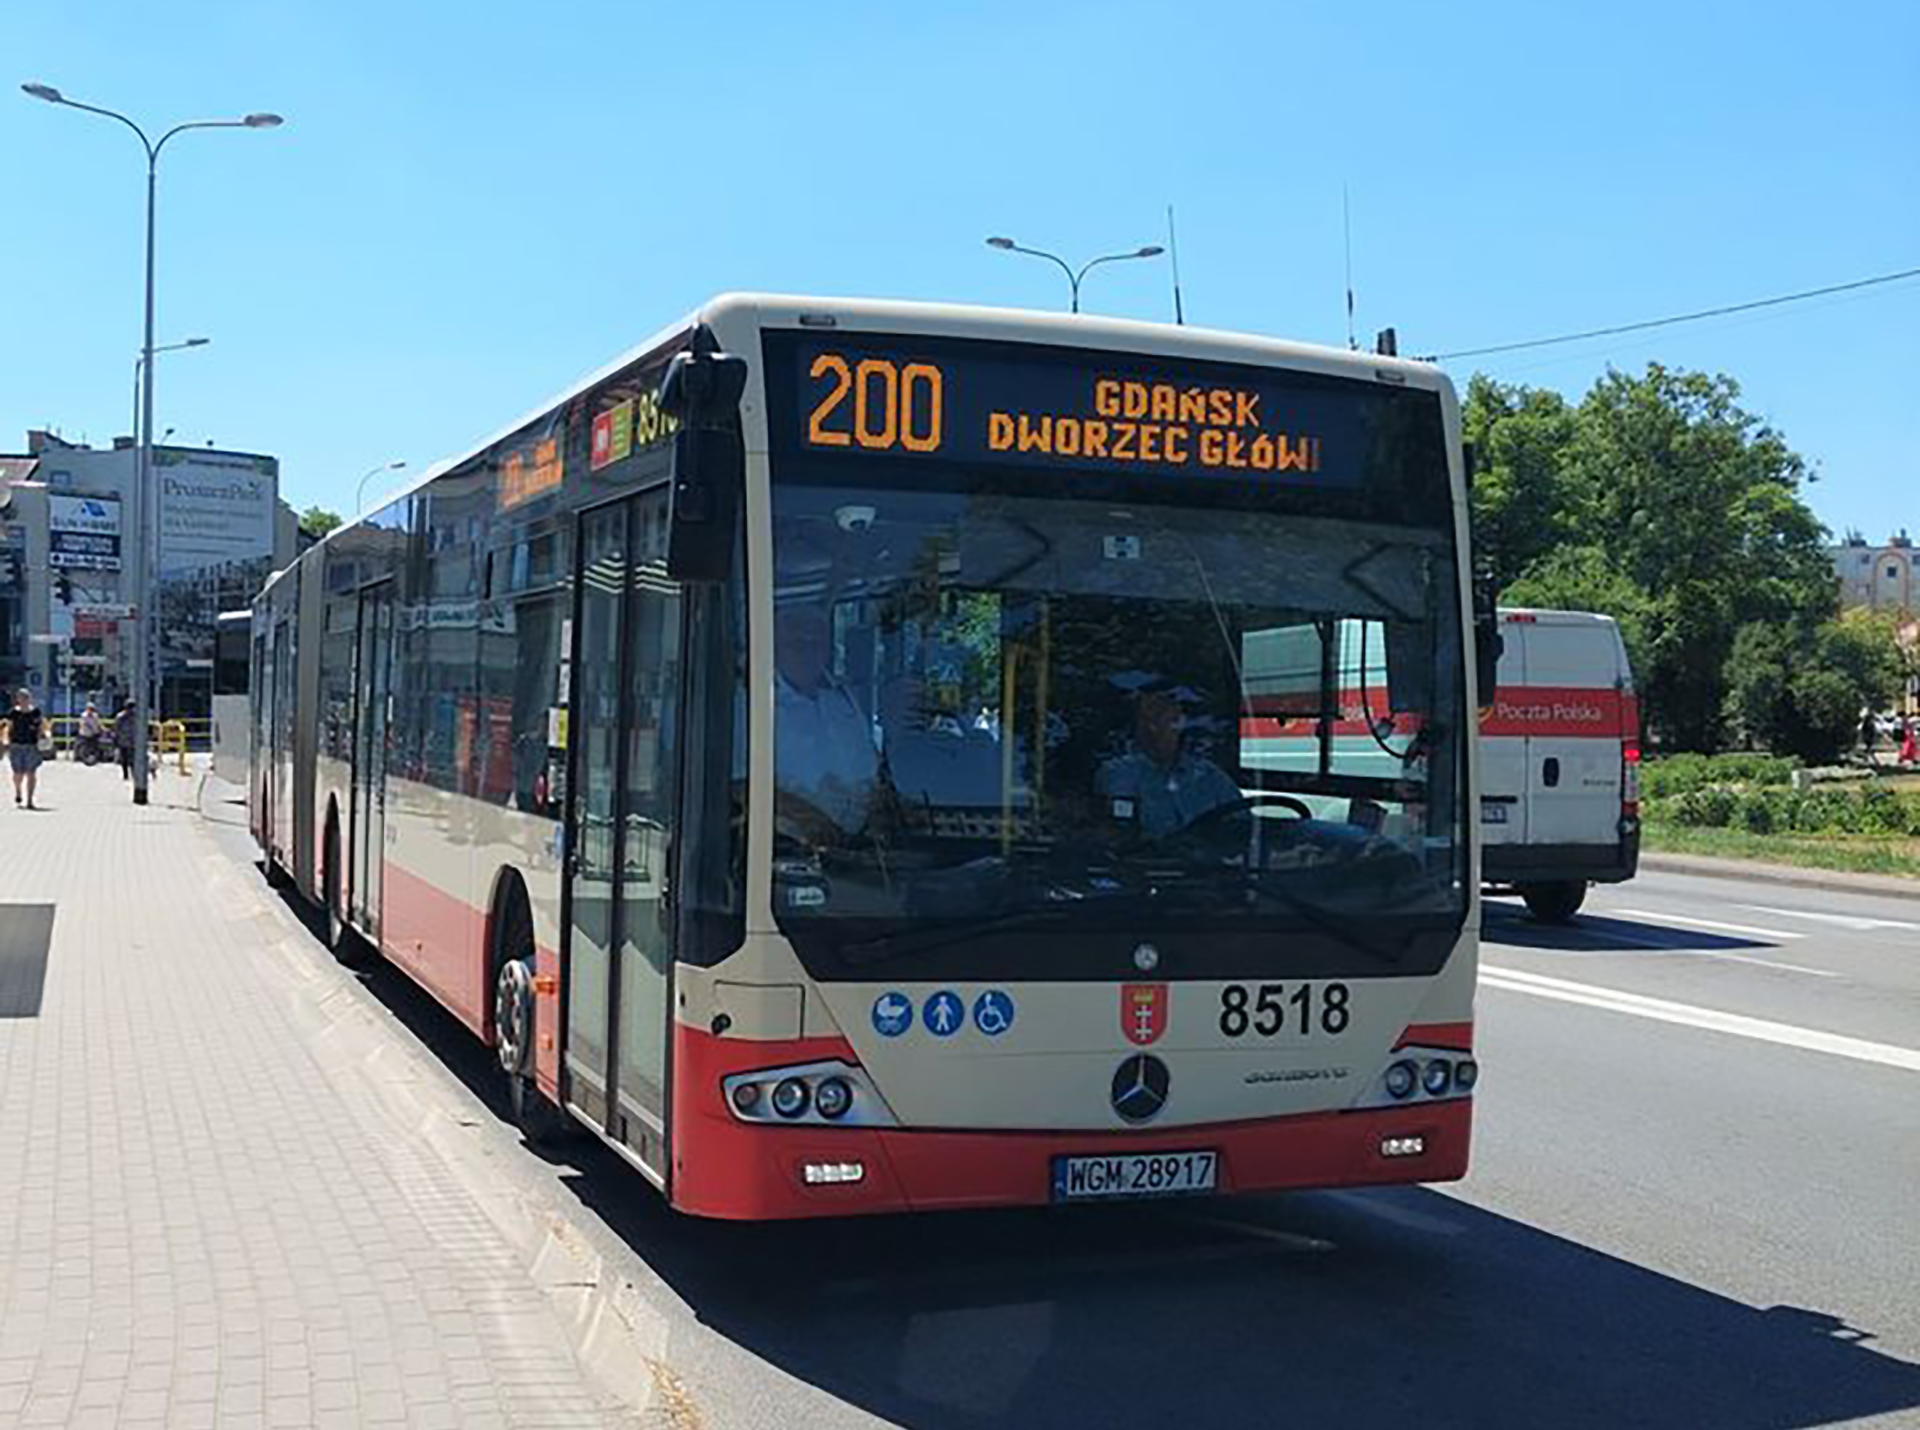 Zmiana trasy linii autobusowej 200